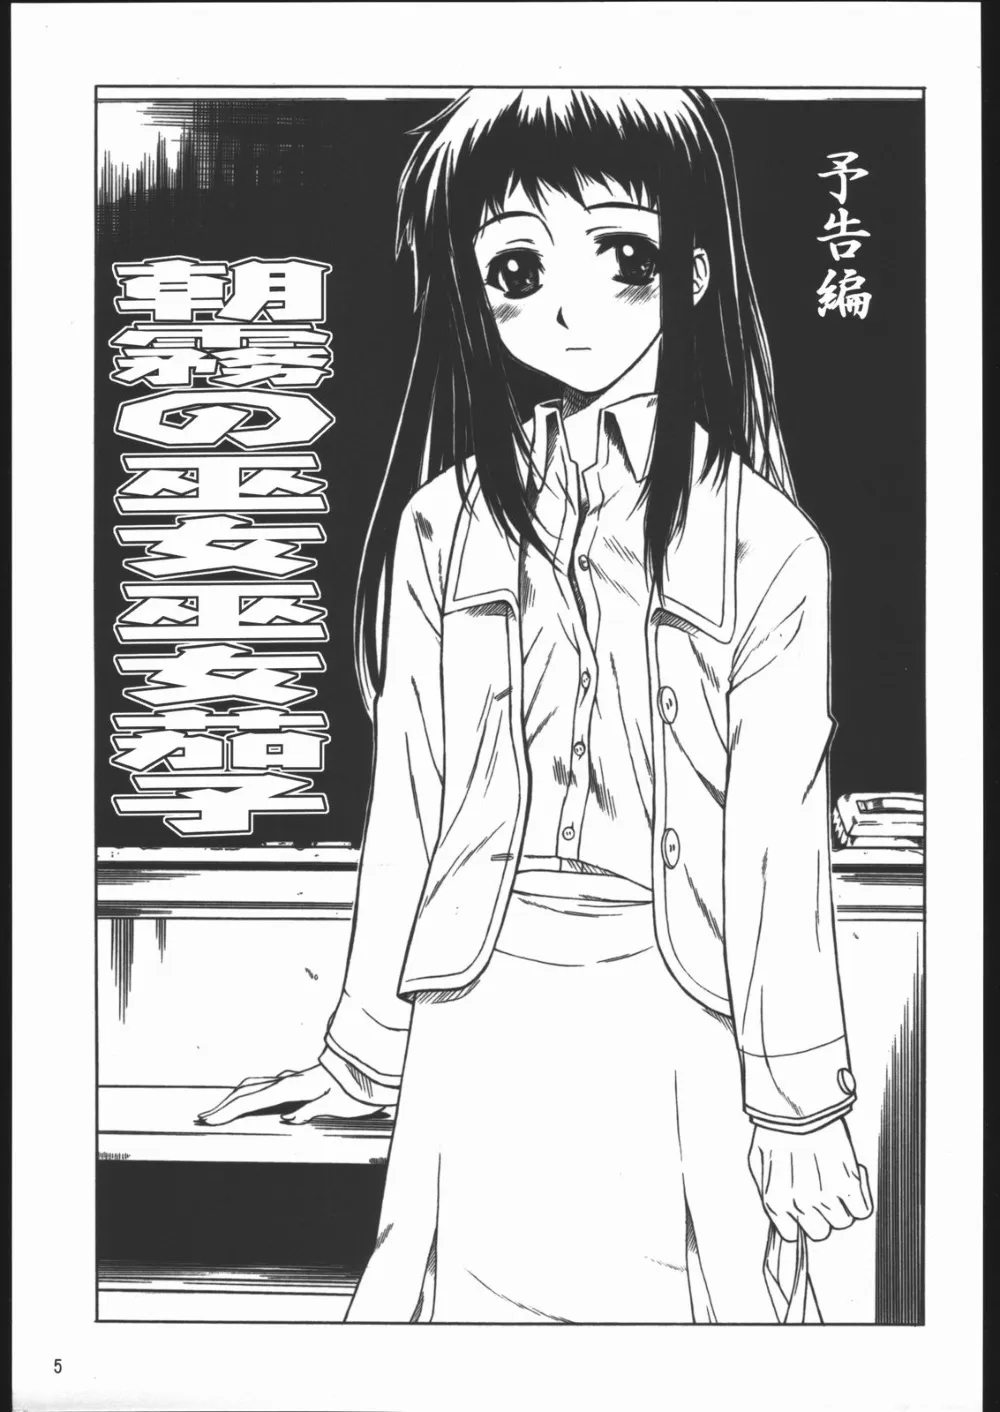 Read Or DieTo HeartTsukihimeUchuu No Stellvia,Yappari Dame Ningen No Shoumei [Japanese][第5页]